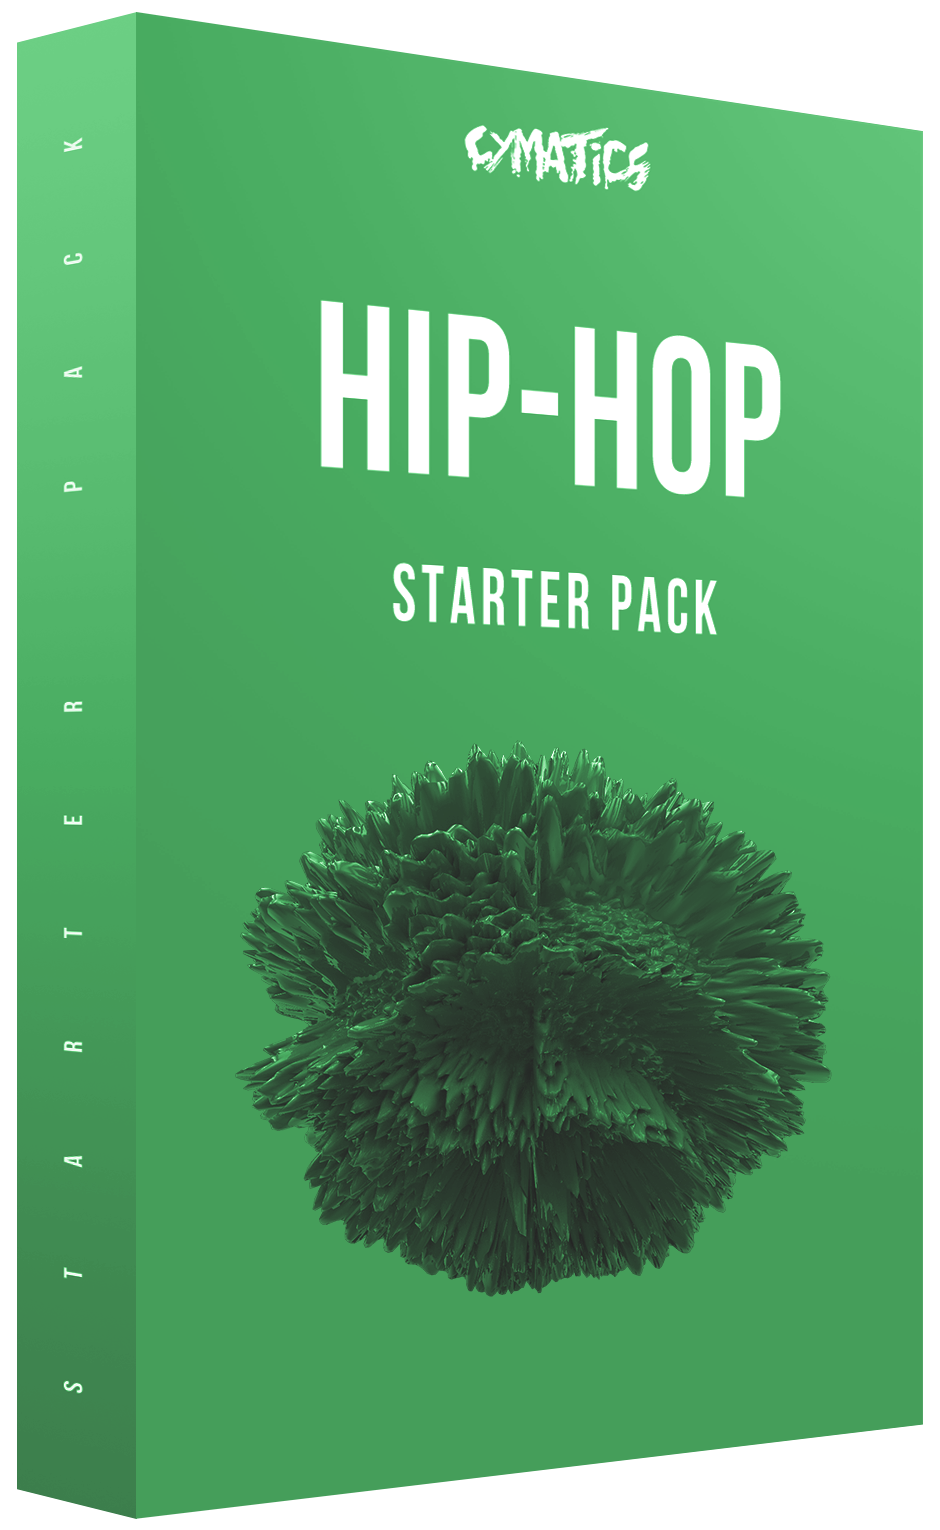 Cymatics Hip-Hop Starter Pack WAV VST Crack Free Download